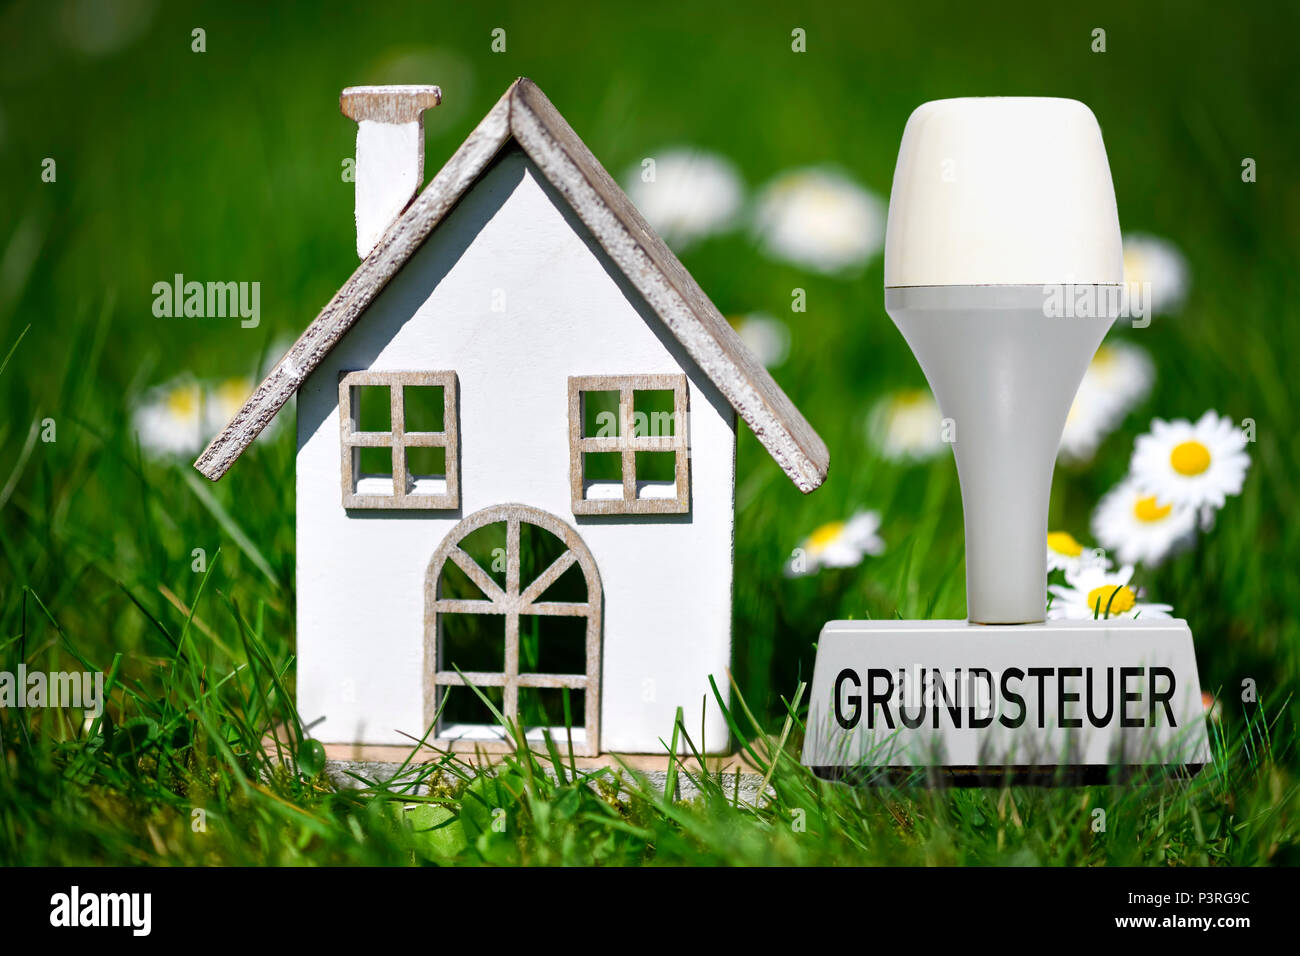 Casa en miniatura en el verde de los impuestos sobre la tierra y el sello con la inscripción Miniaturhaus im Grünen und mit Stempel Aufschrift Grundsteuer Foto de stock